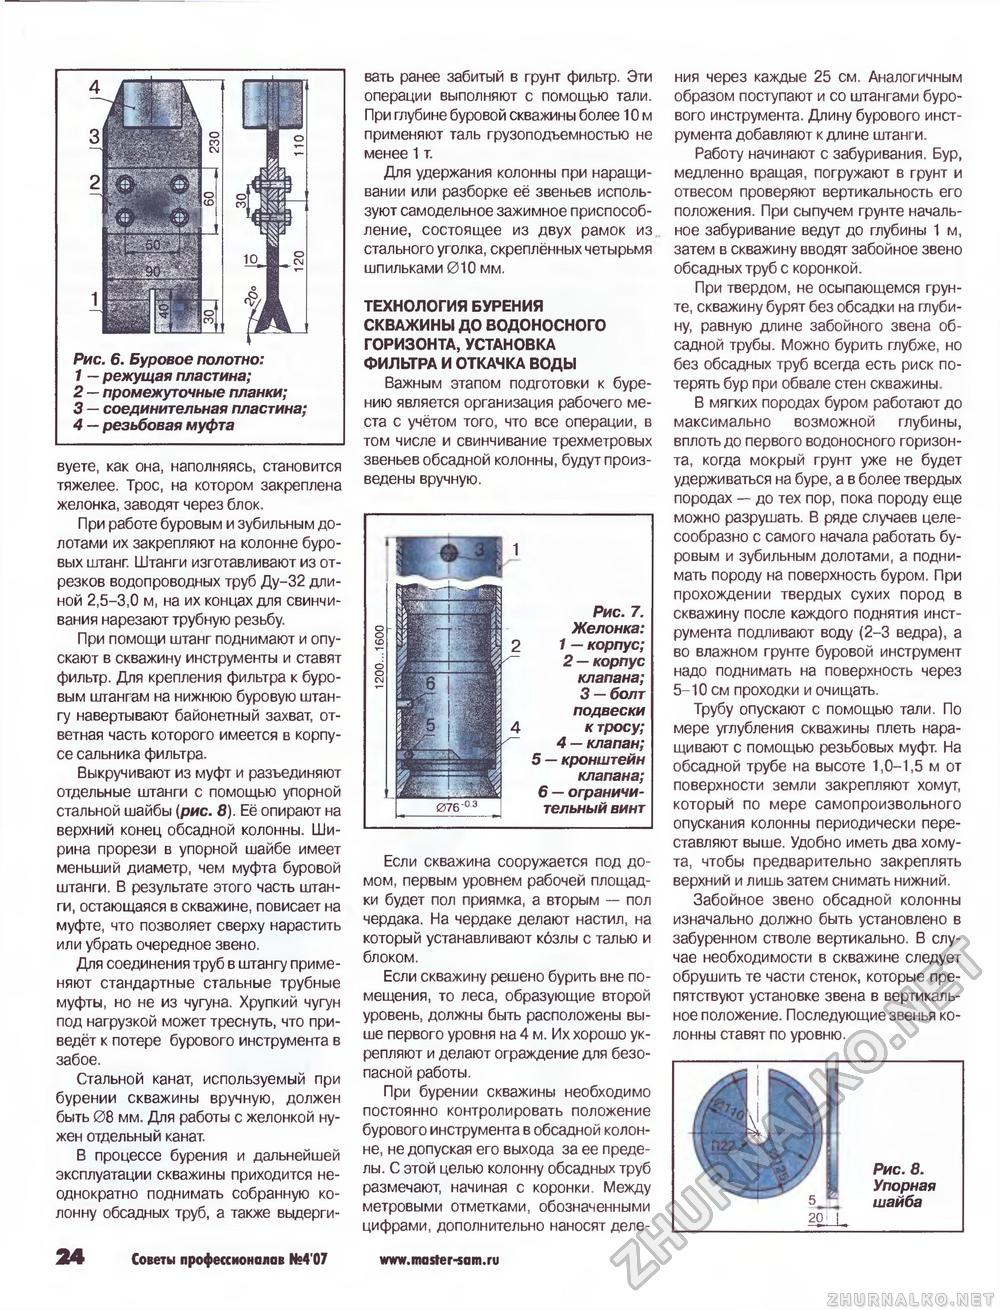 Советы профессионалов 2007-04, страница 24